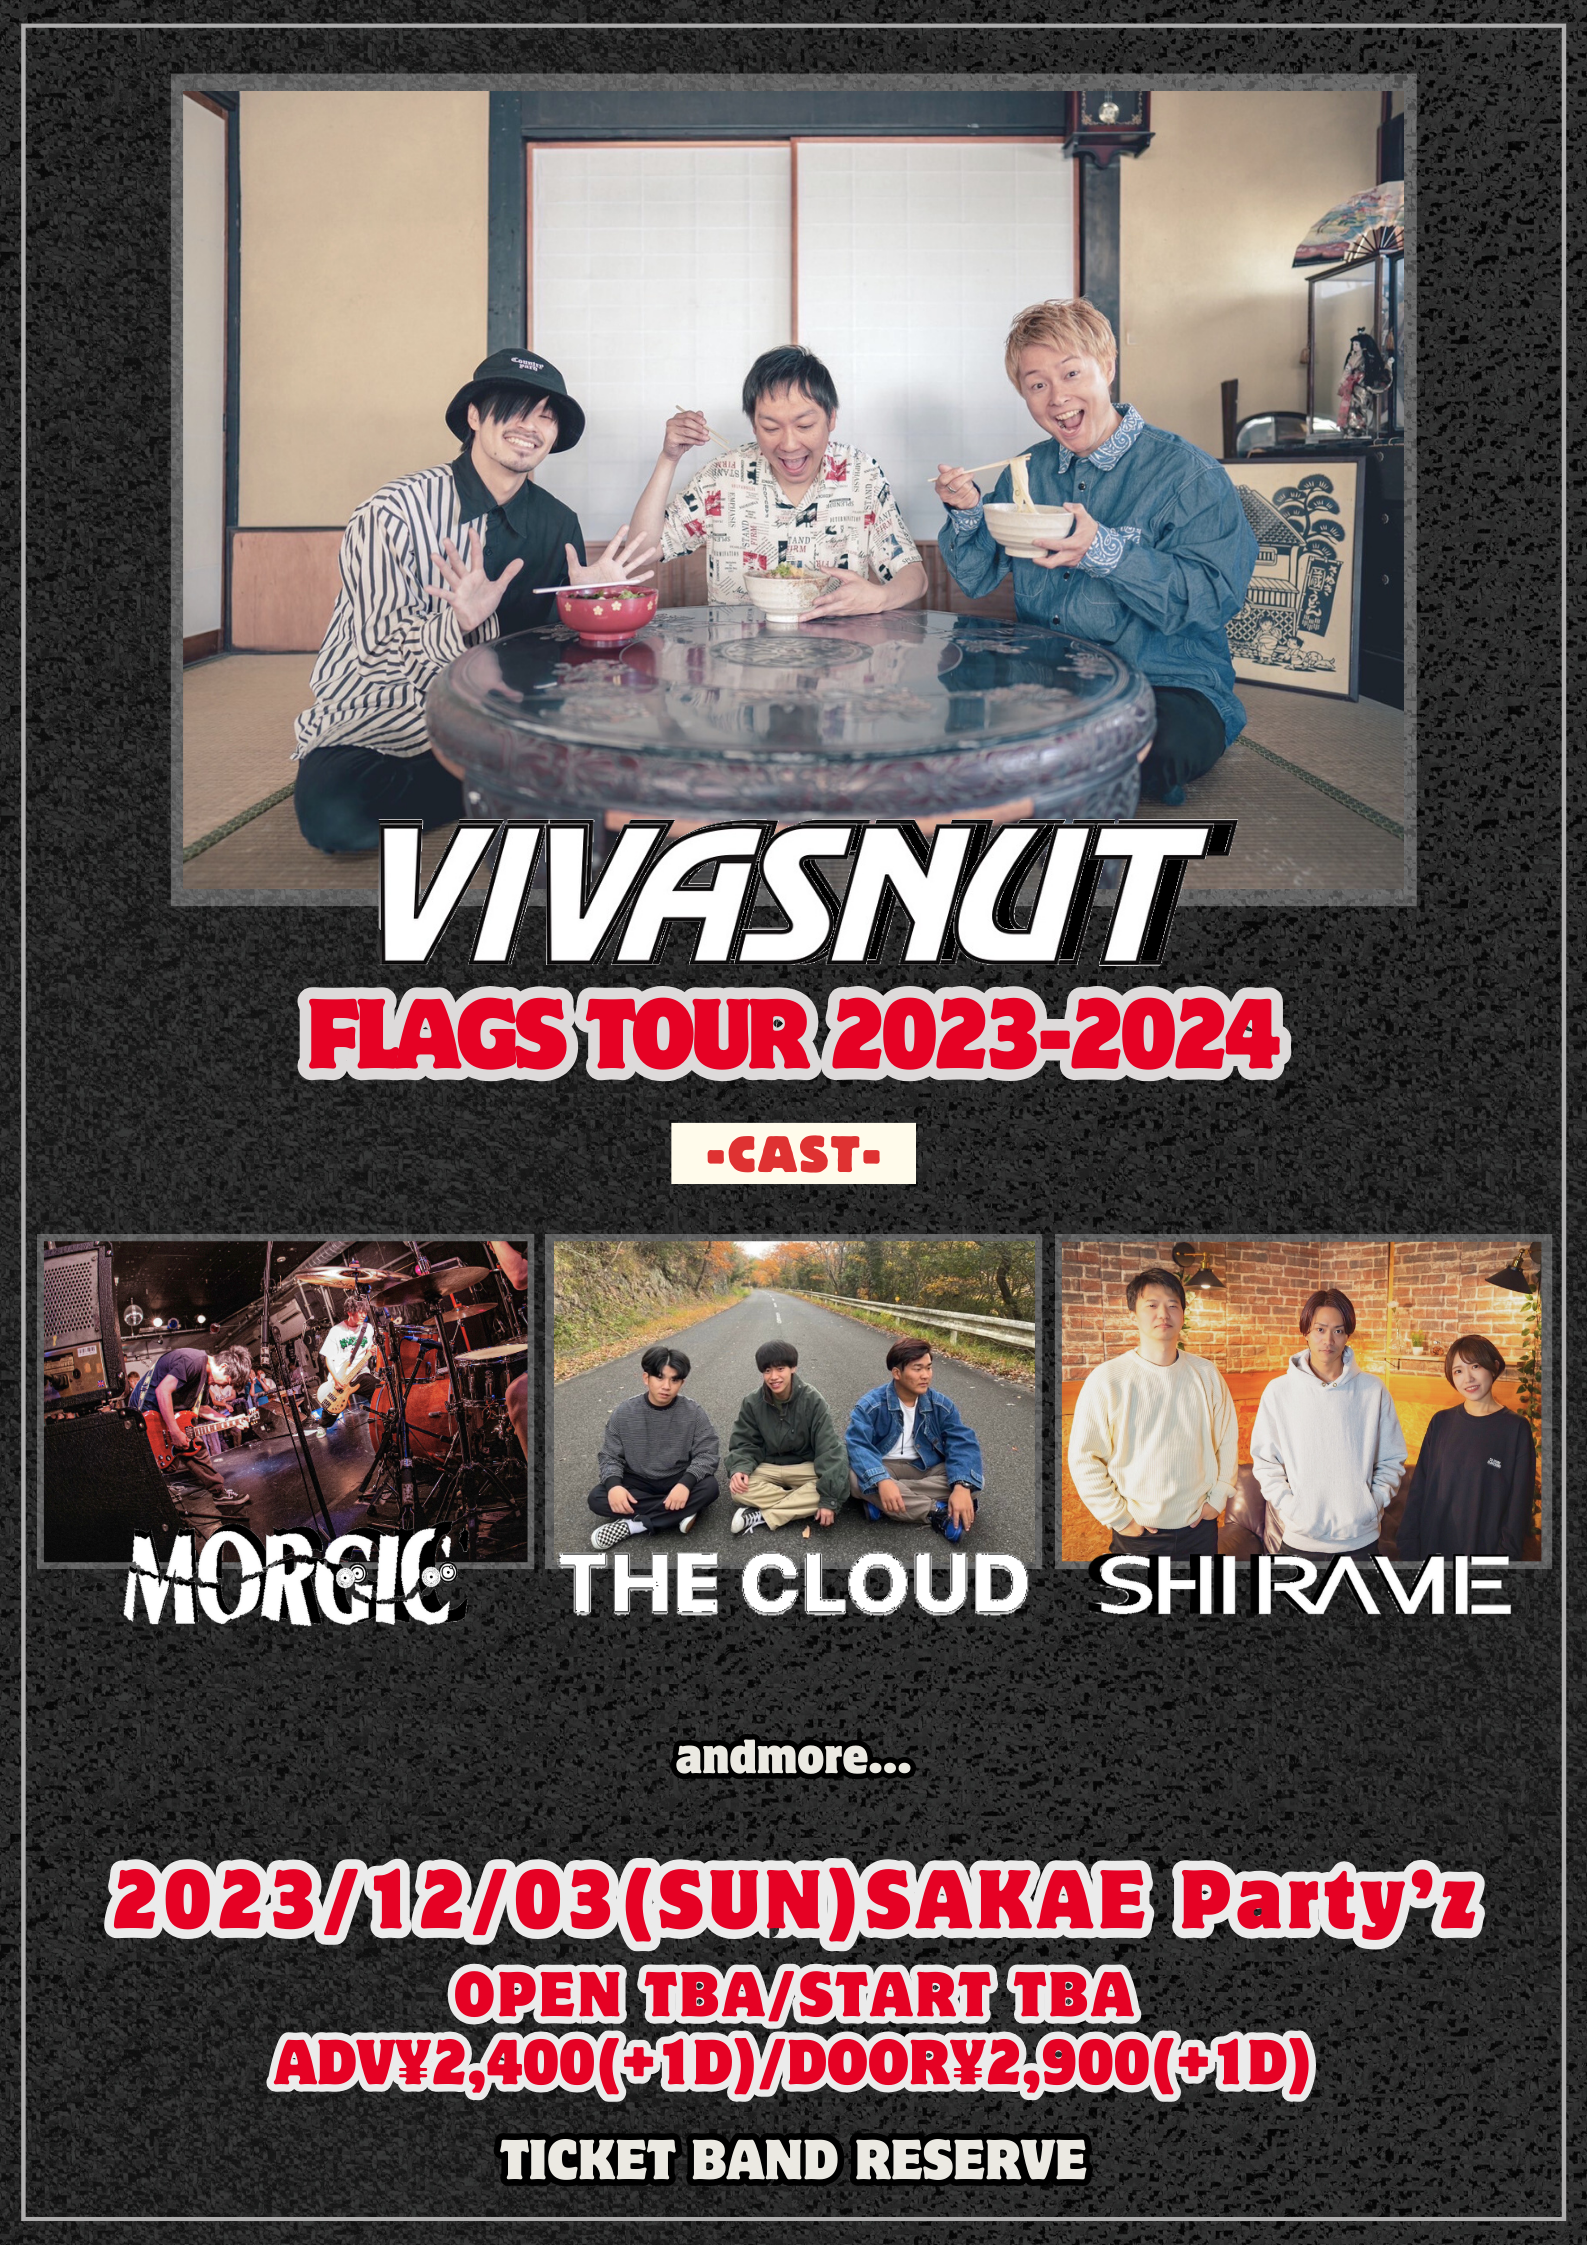 VIVASNUT FLAGS TOUR2023-2024